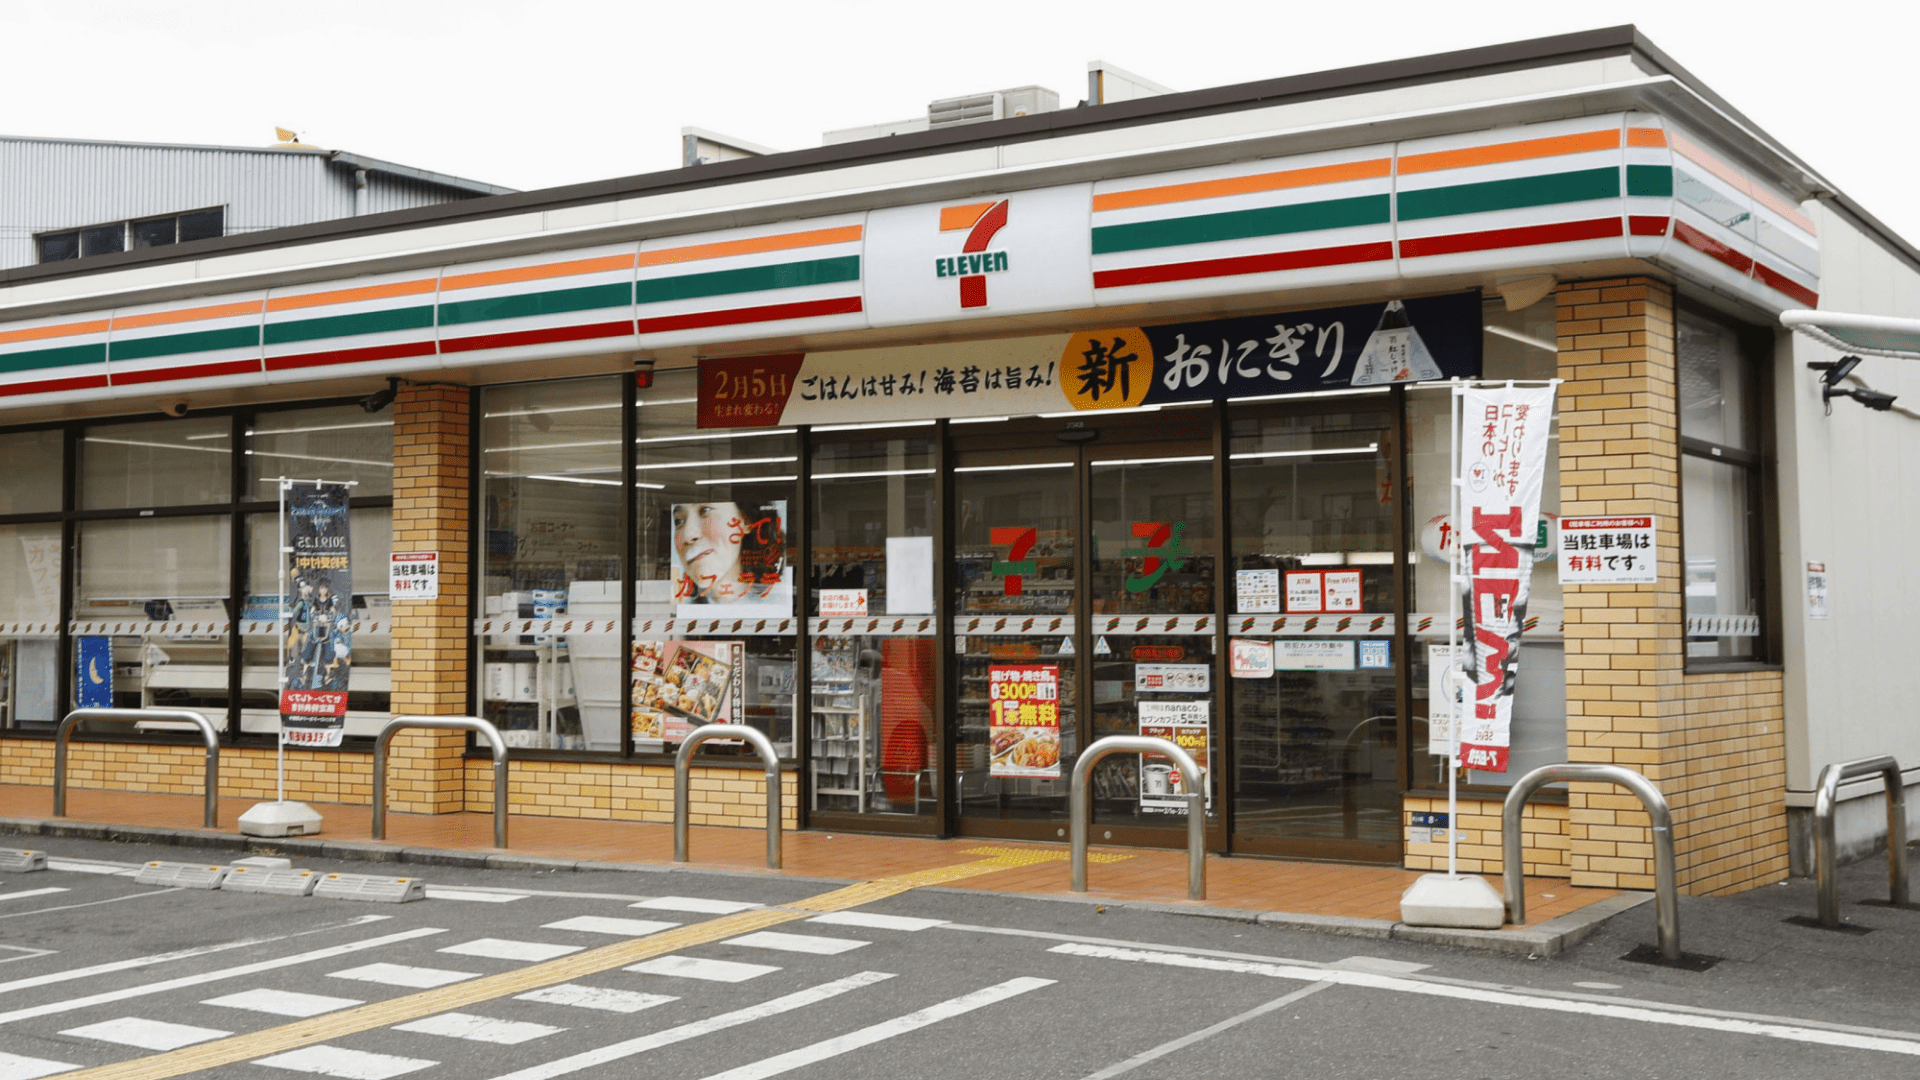 जब टोक्यो में, सब कुछ आप 7-Elevens और सुविधा स्टोर के बारे में पता भूल जाओ